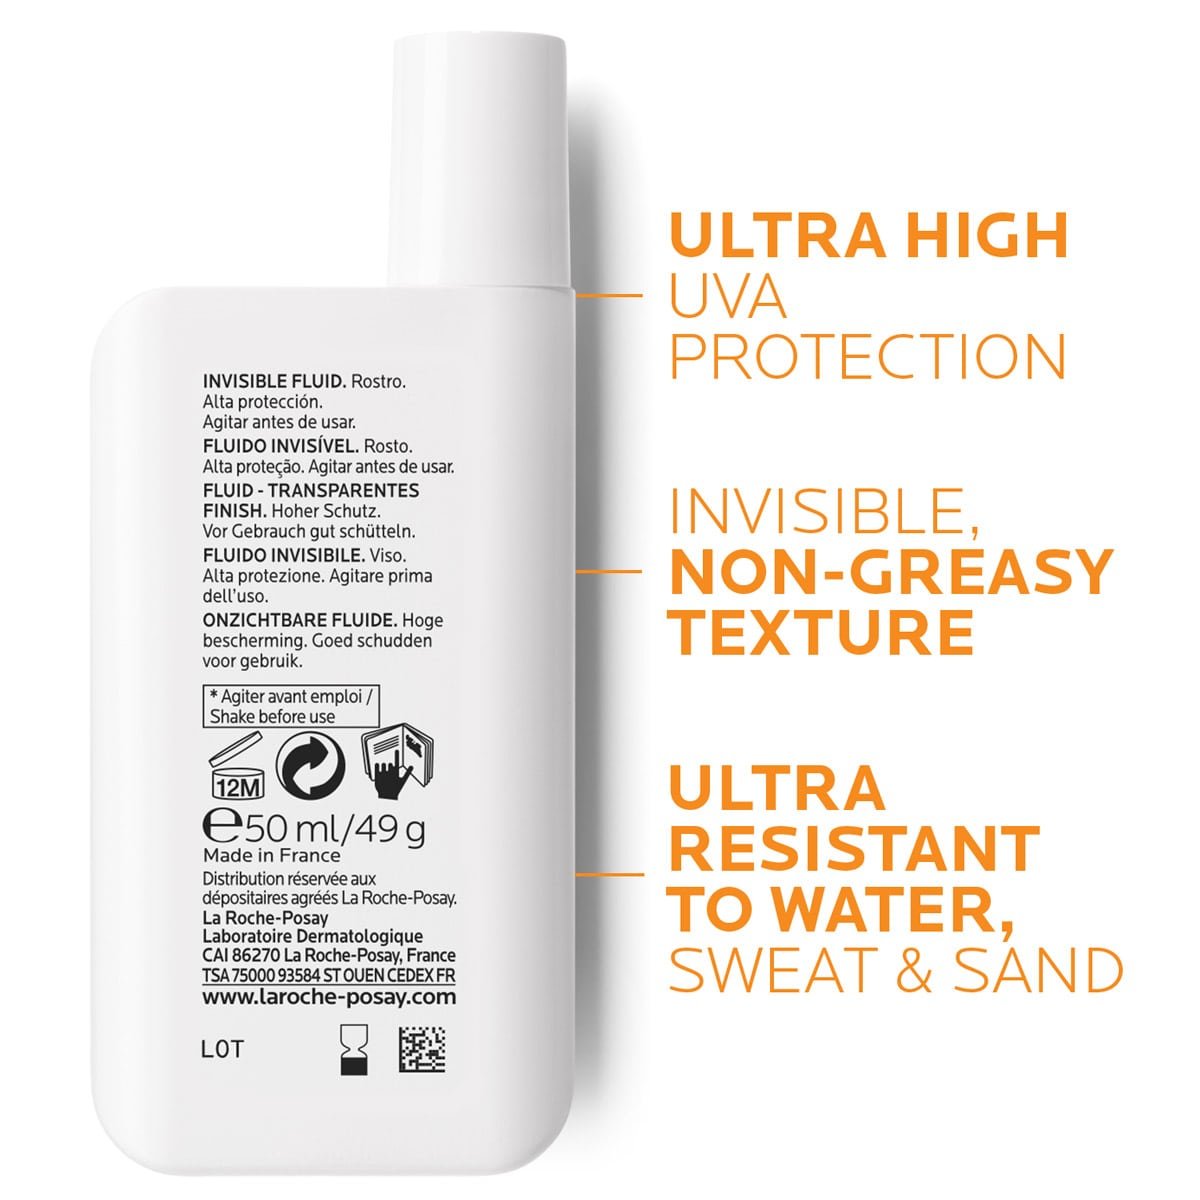 Retro di confezione Anthelios con indicazioni: Ultra High UVA Protection, Invisible, Non-Greasy Texture, Ultra Resistant to Water, Sweat & Sand